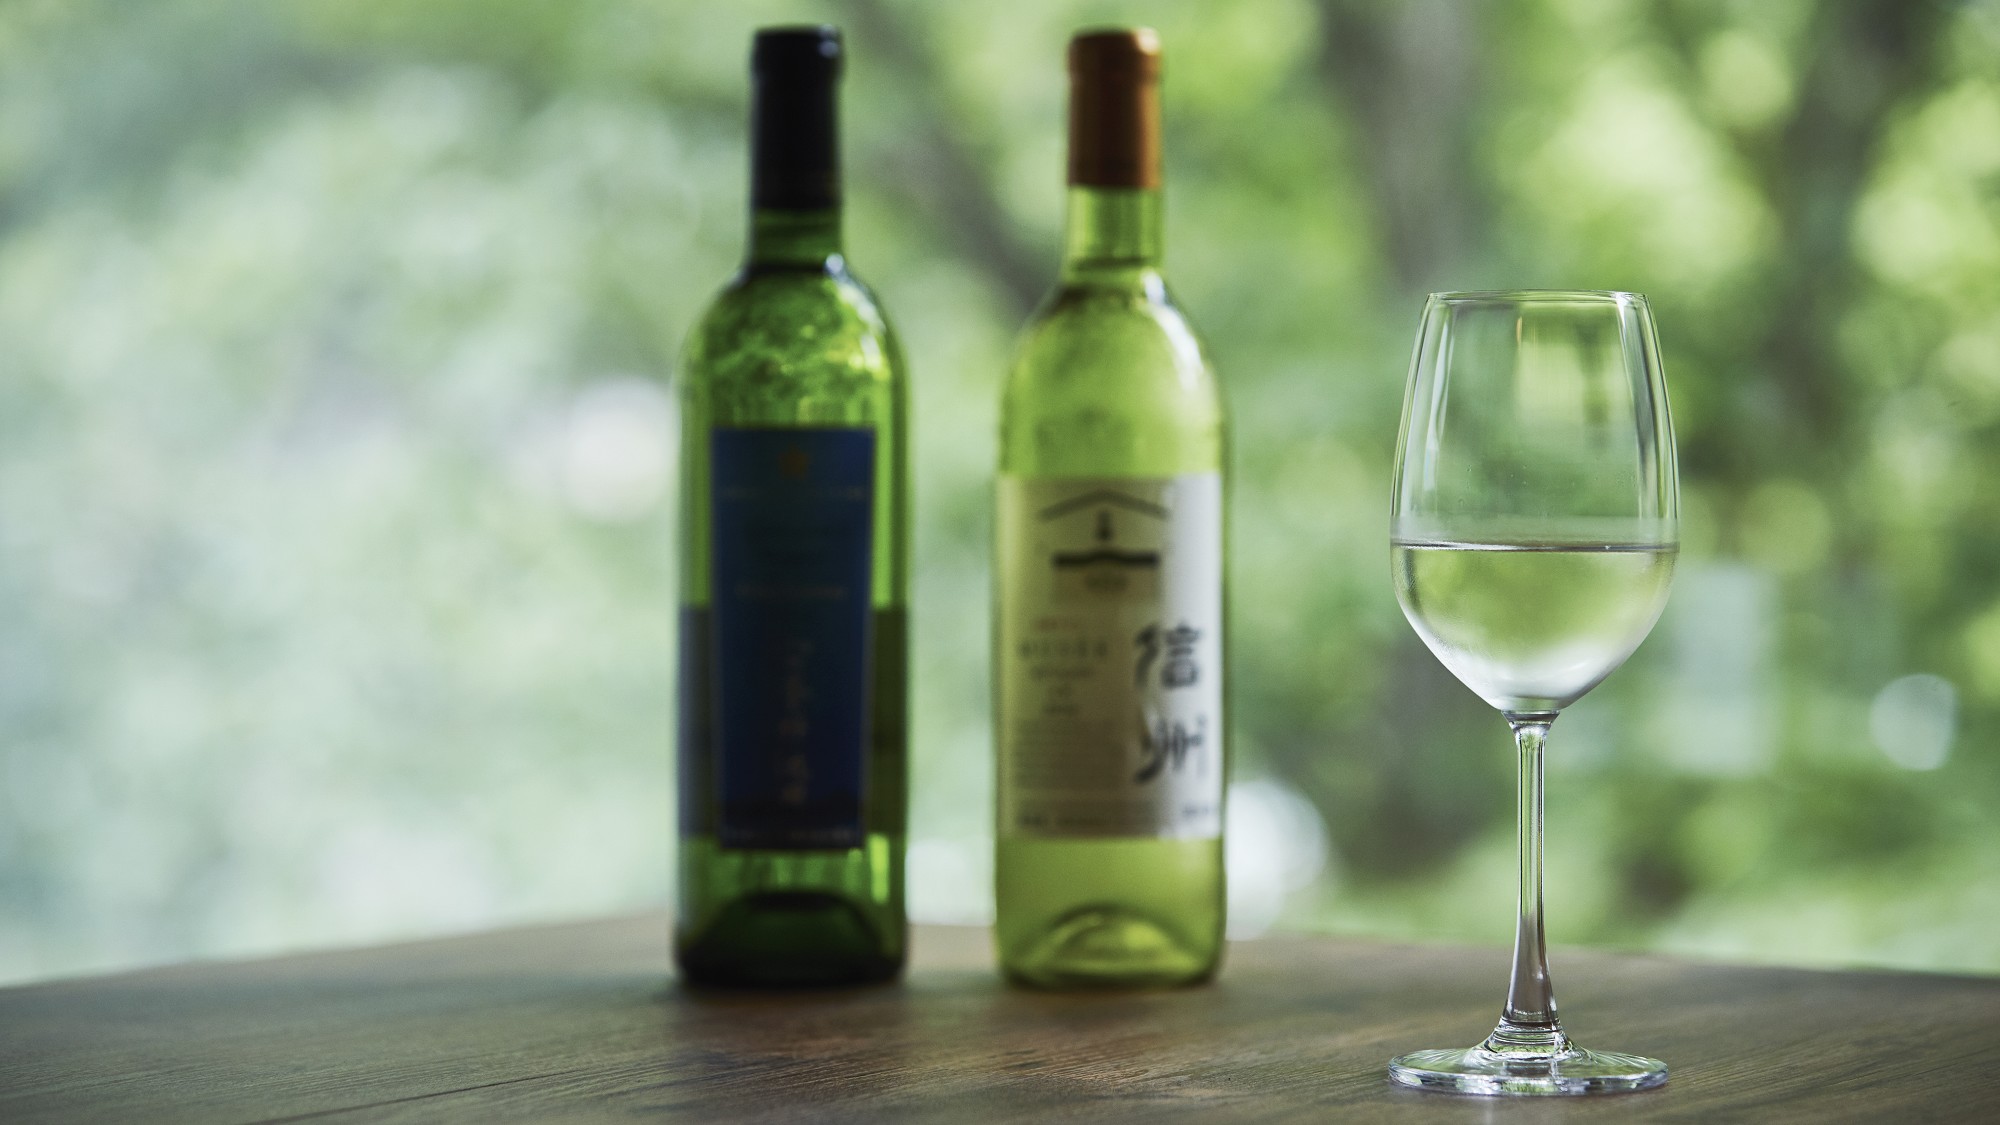 NAGANO WINE長野県はワイン用ぶどうの生産量は日本一を誇ります